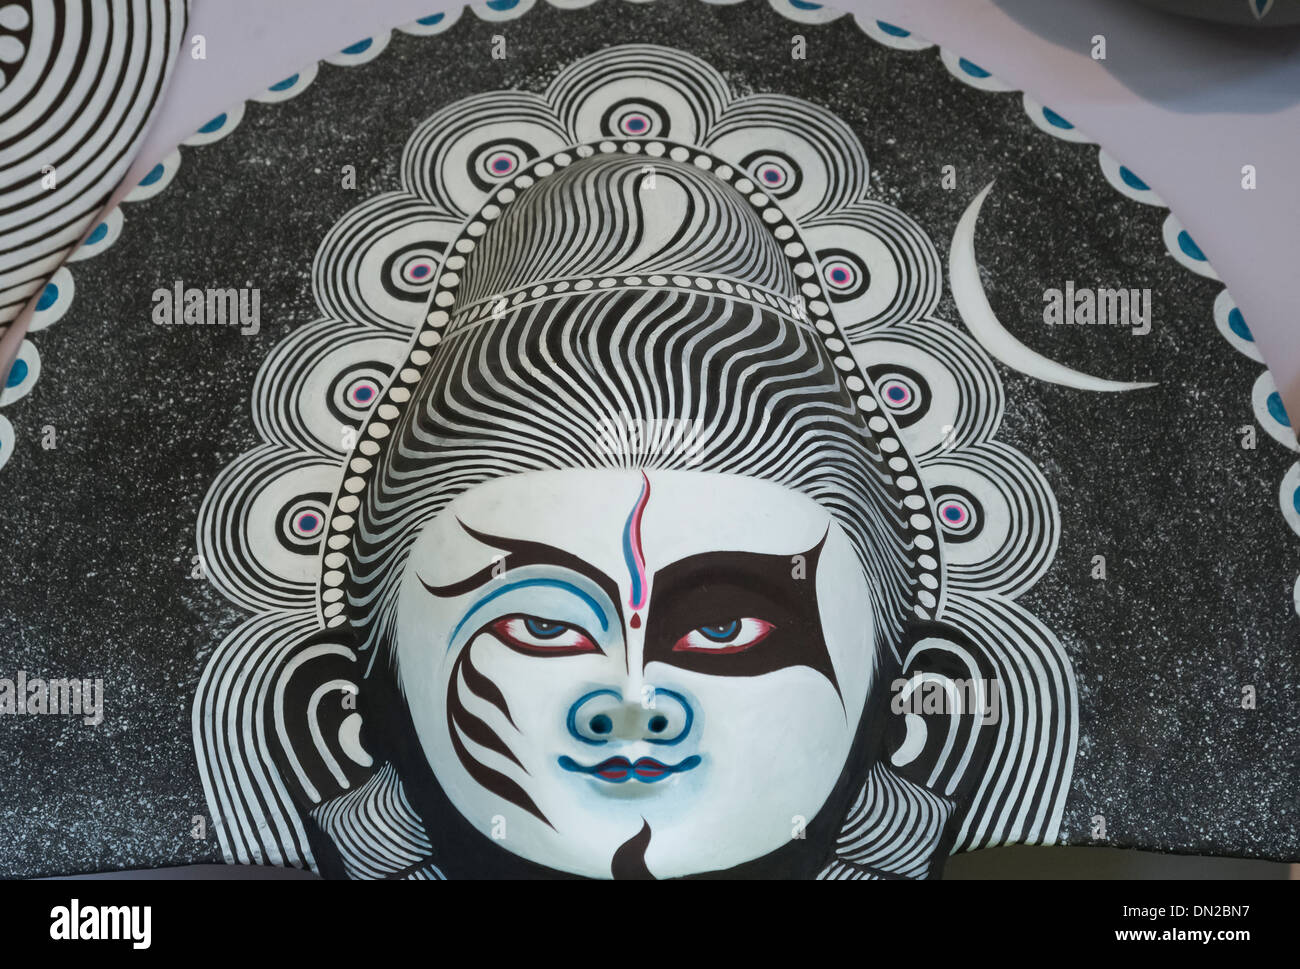 La lavorazione artigianale della maschera di carta del signore Shiva nei colori del bianco e del nero,blu, rosa che indica varie qualità di Dio. Foto Stock